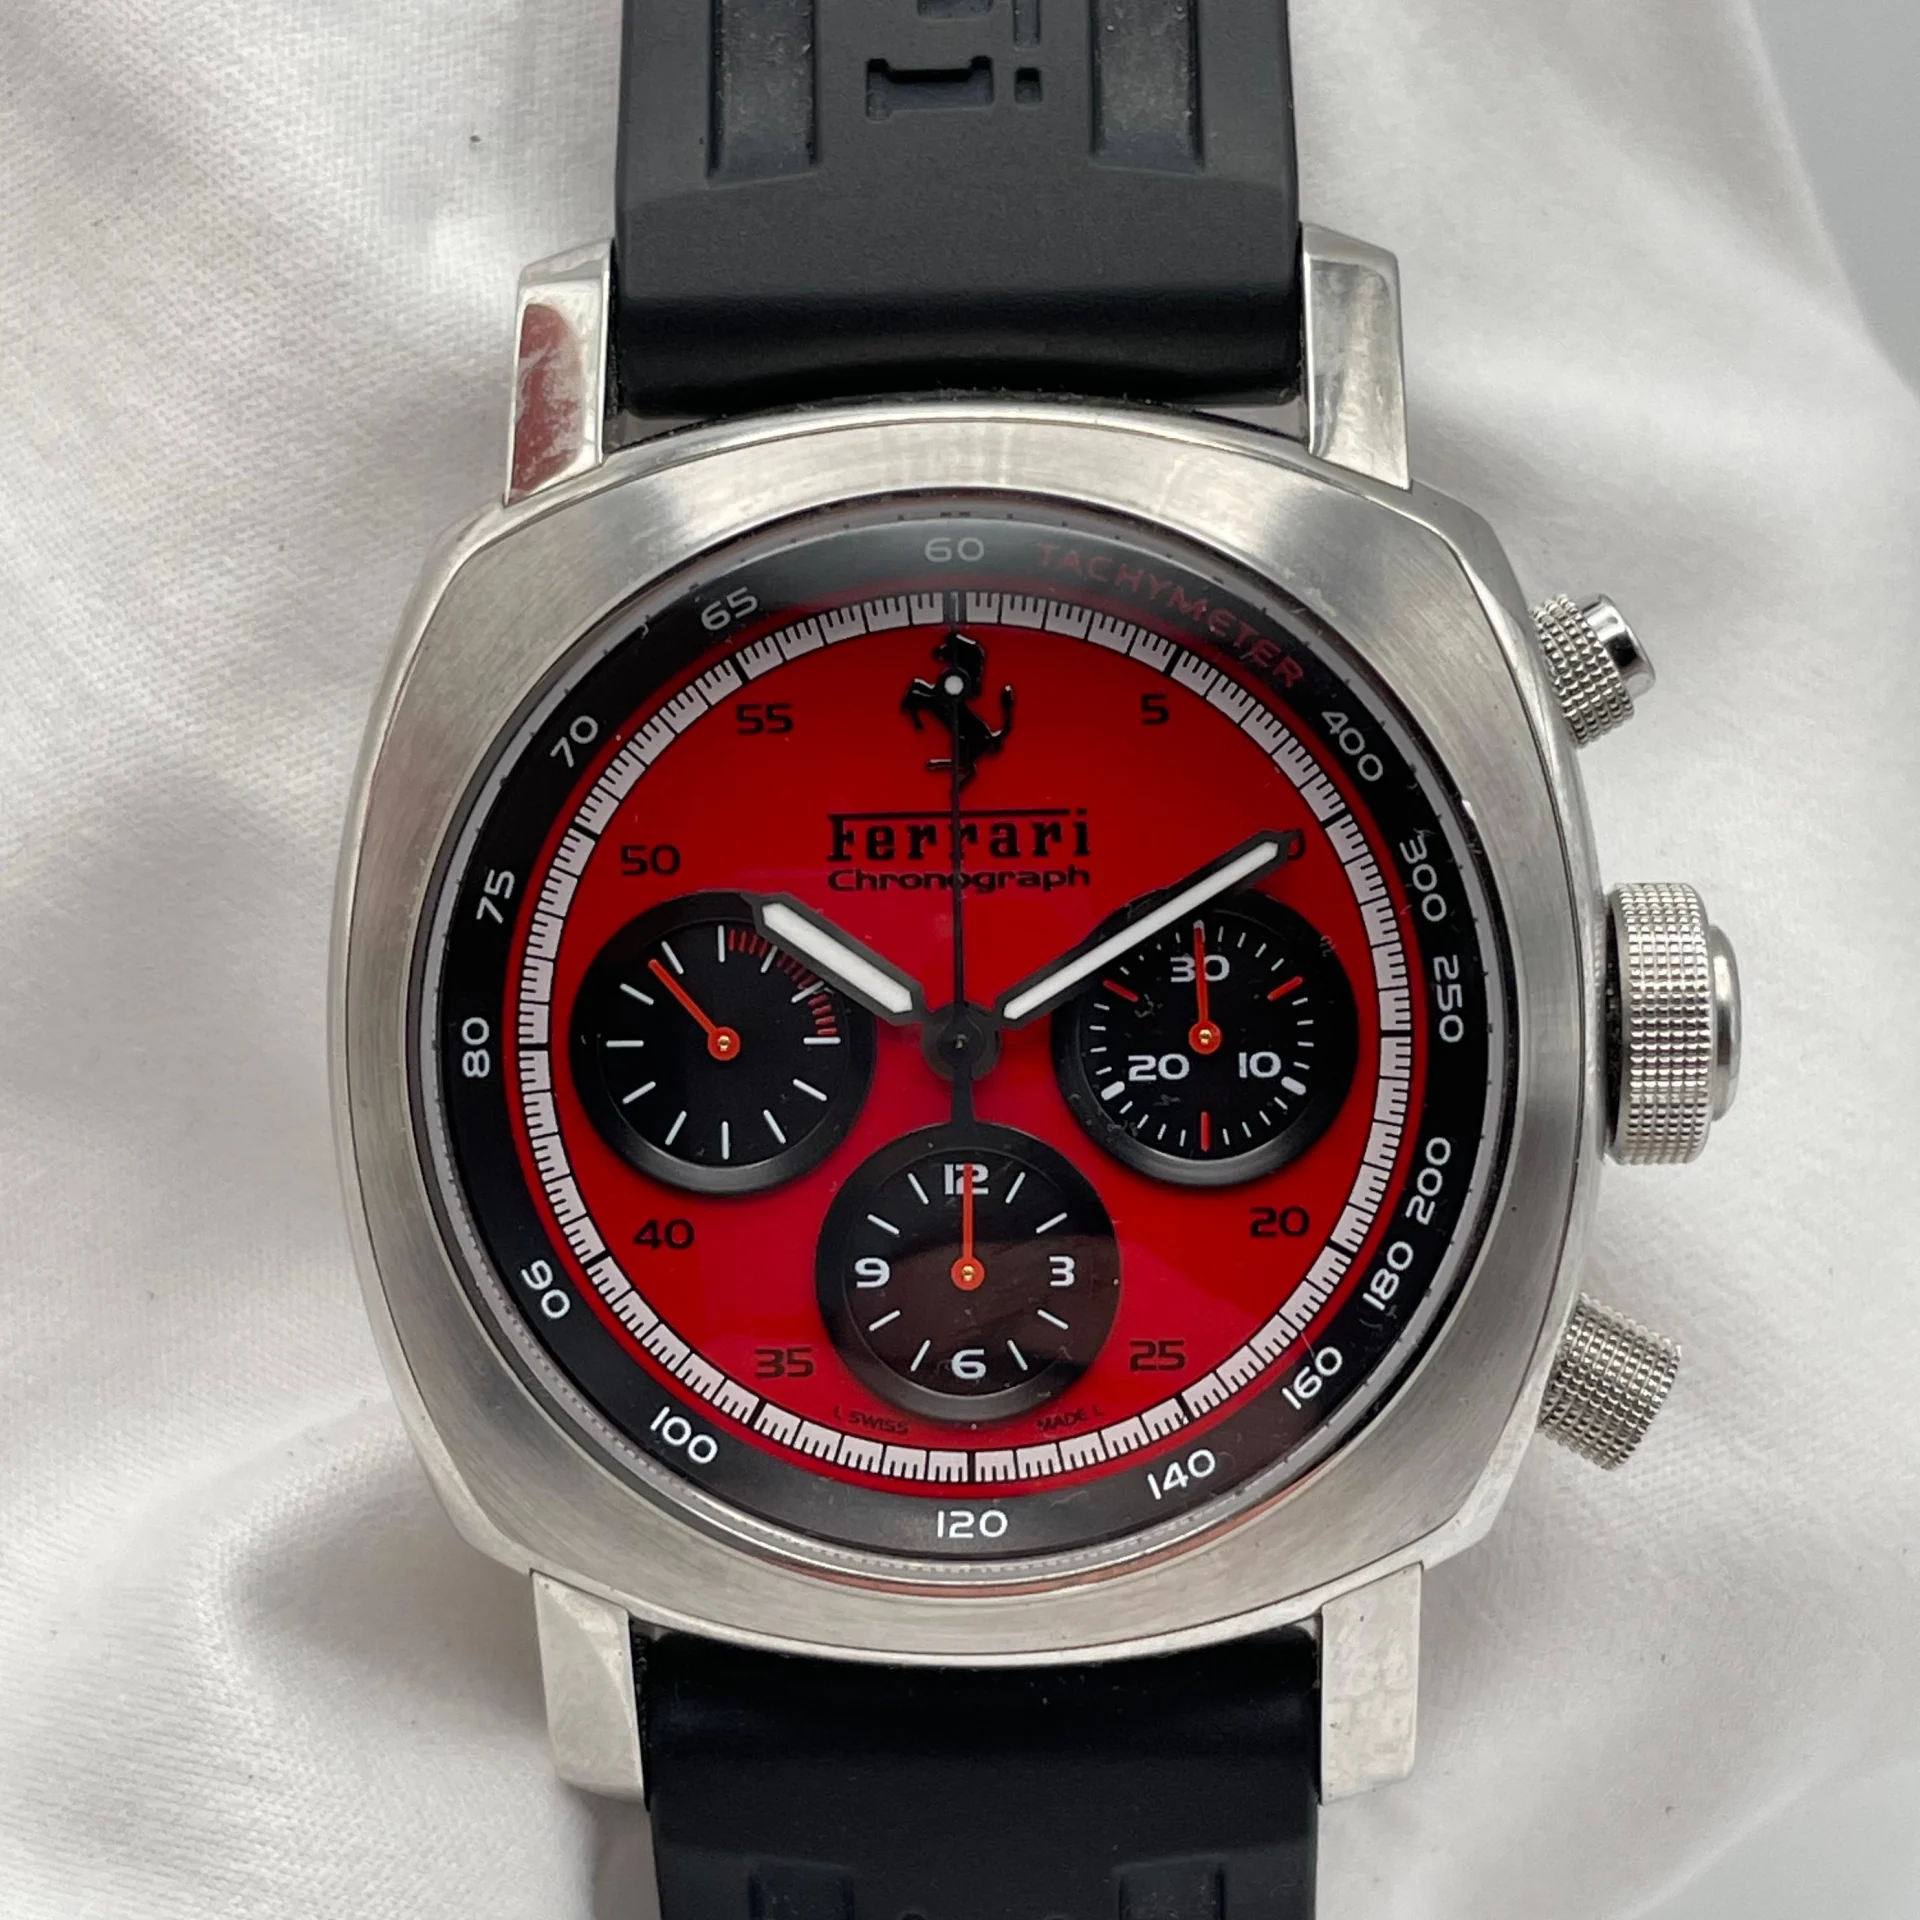 Panerai Ferrari Granturismo Chronograph Red FER00013 Listing Image